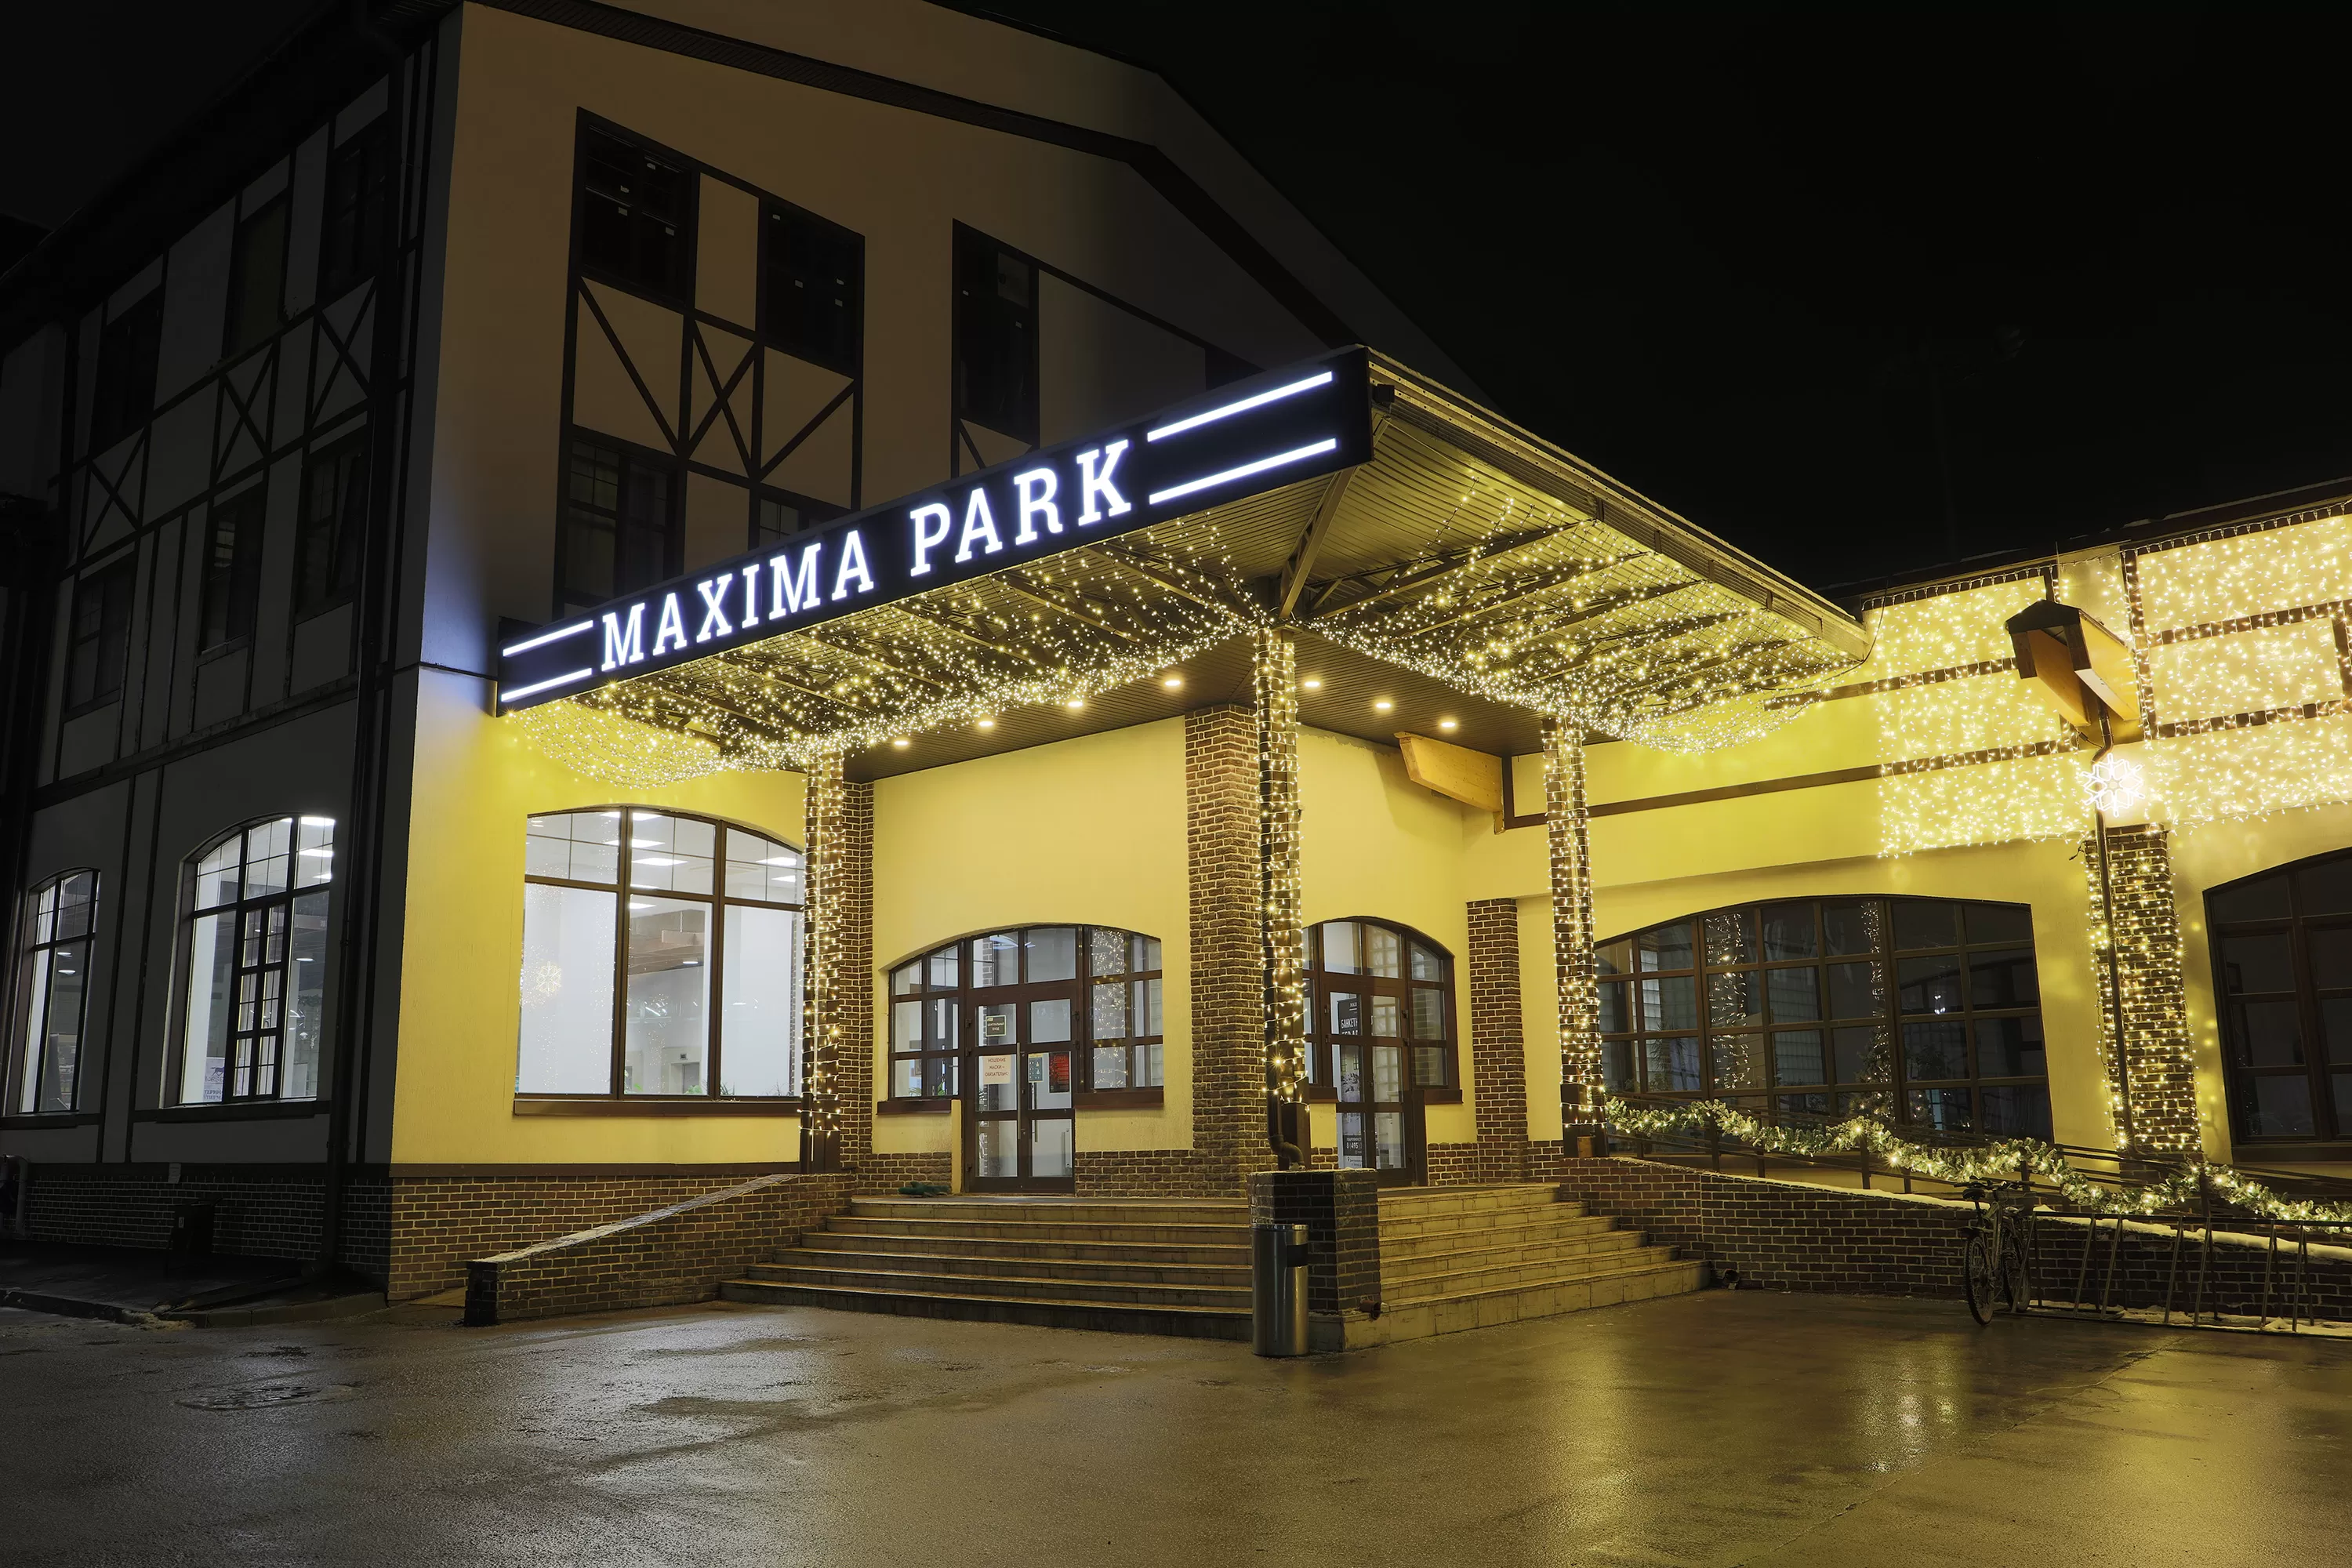 Конно-спортивный комплекс Максима парк